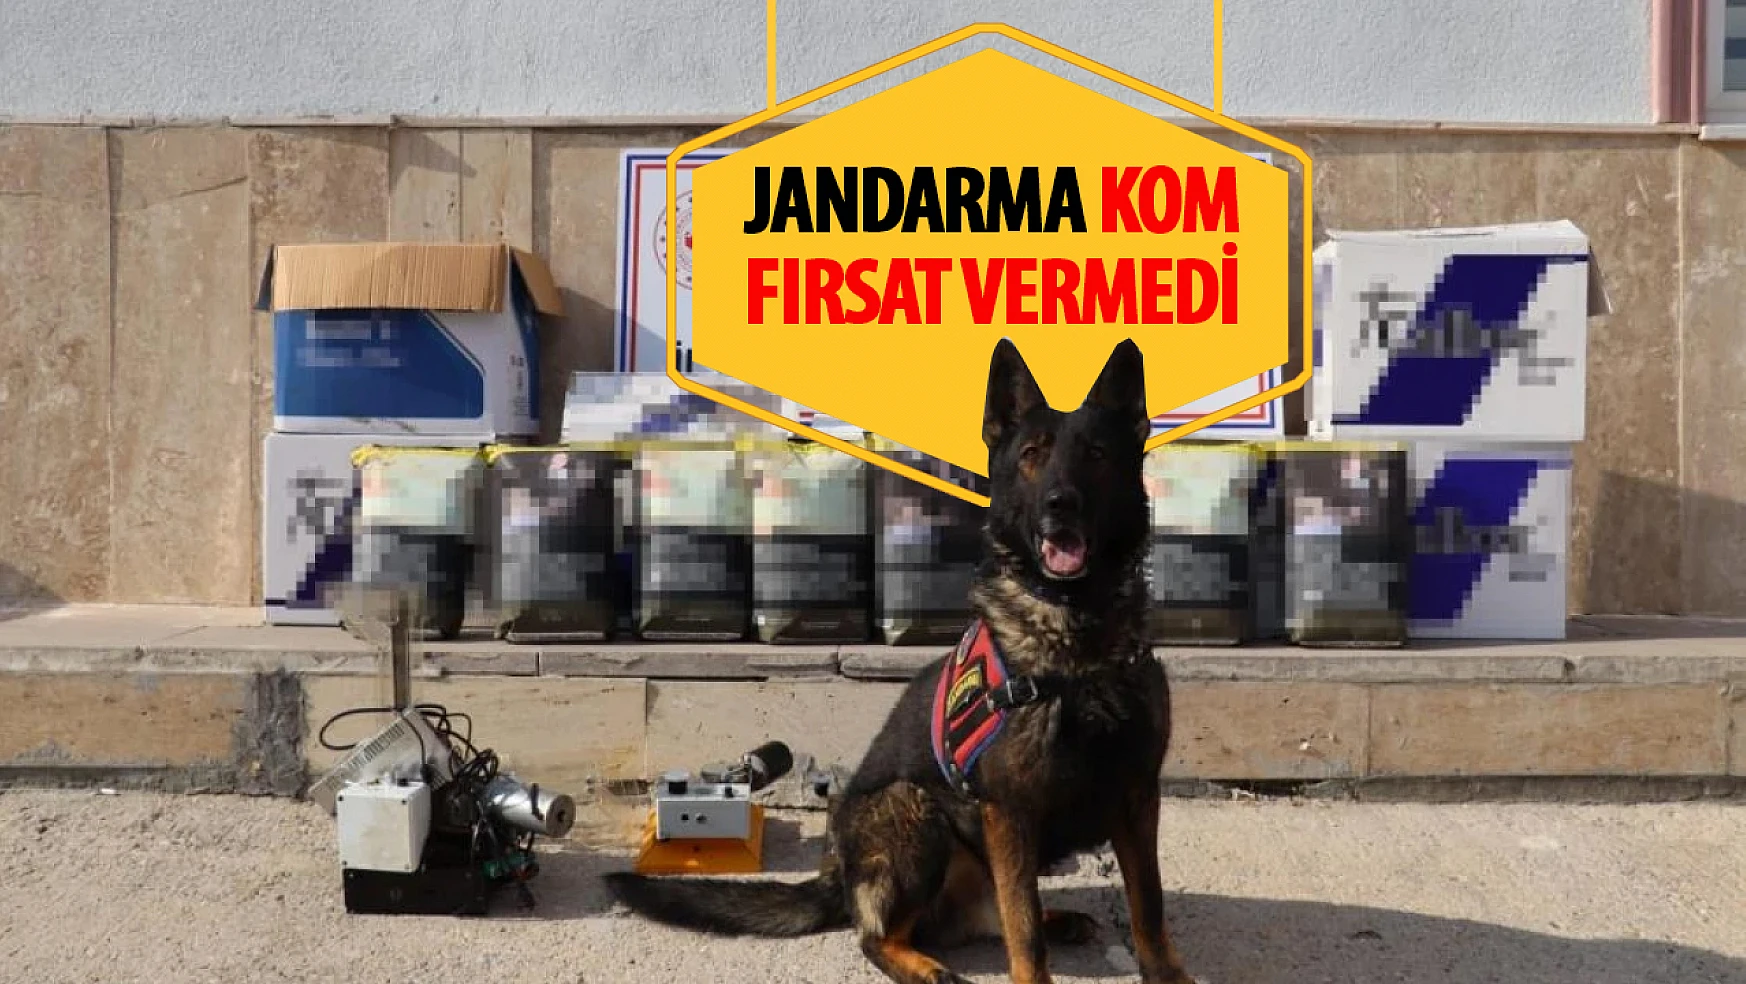 Karaman'da Jandarma'dan kaçak tütün operasyonu: 2 tutuklama